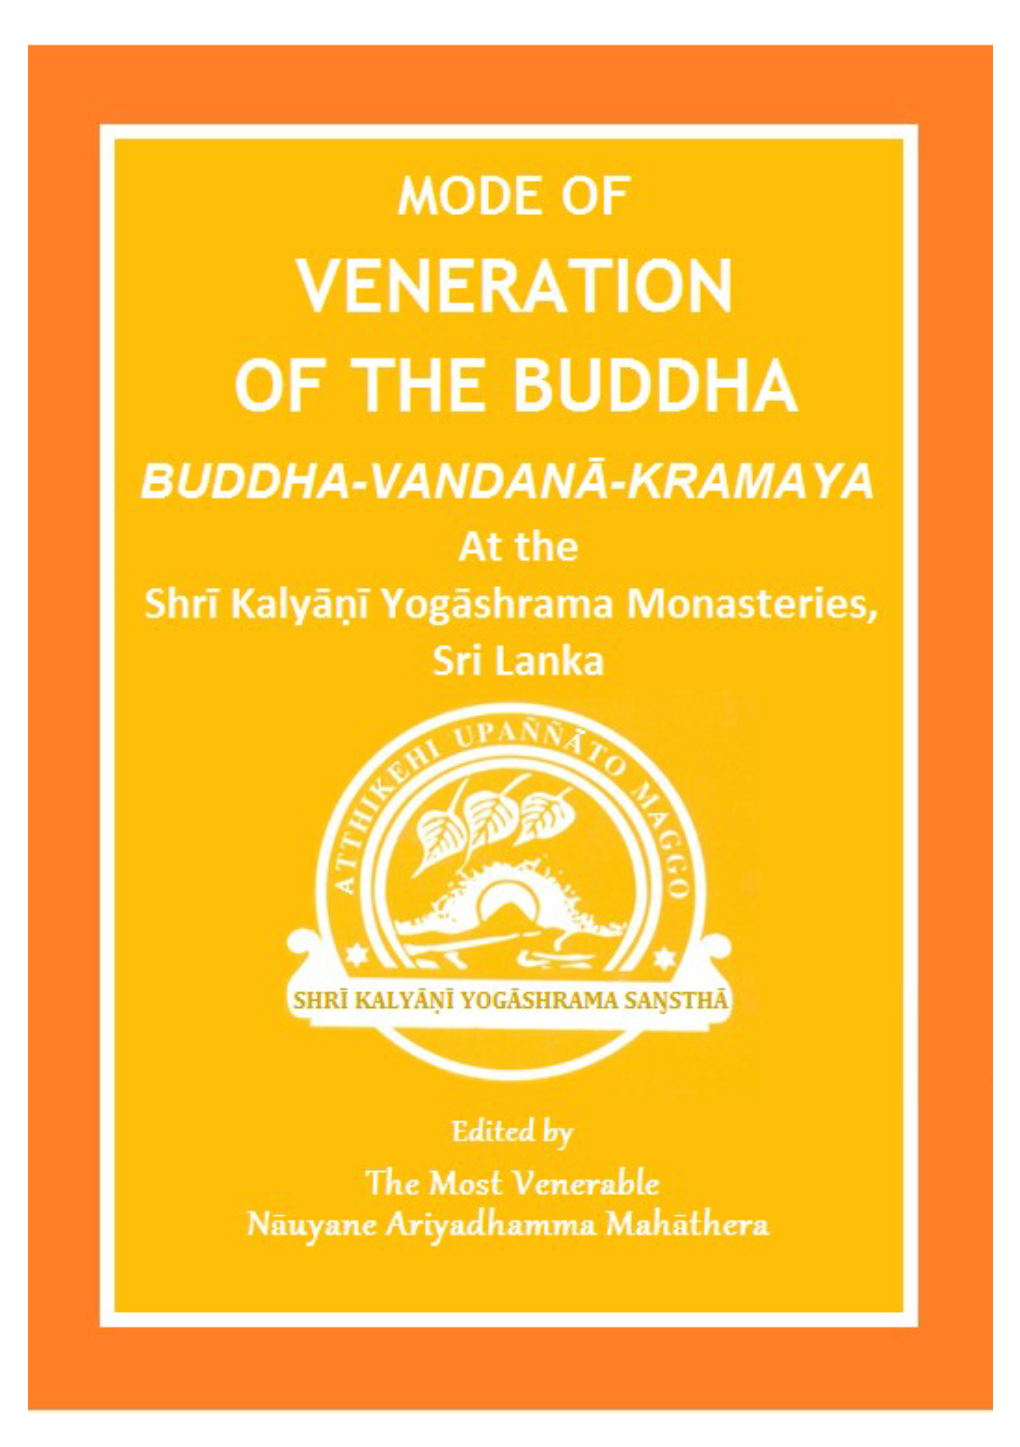 (Paritta) of the Buddha's Qualities Written by the Most Venerable Nàuyane Ariyadhamma Mahàthera